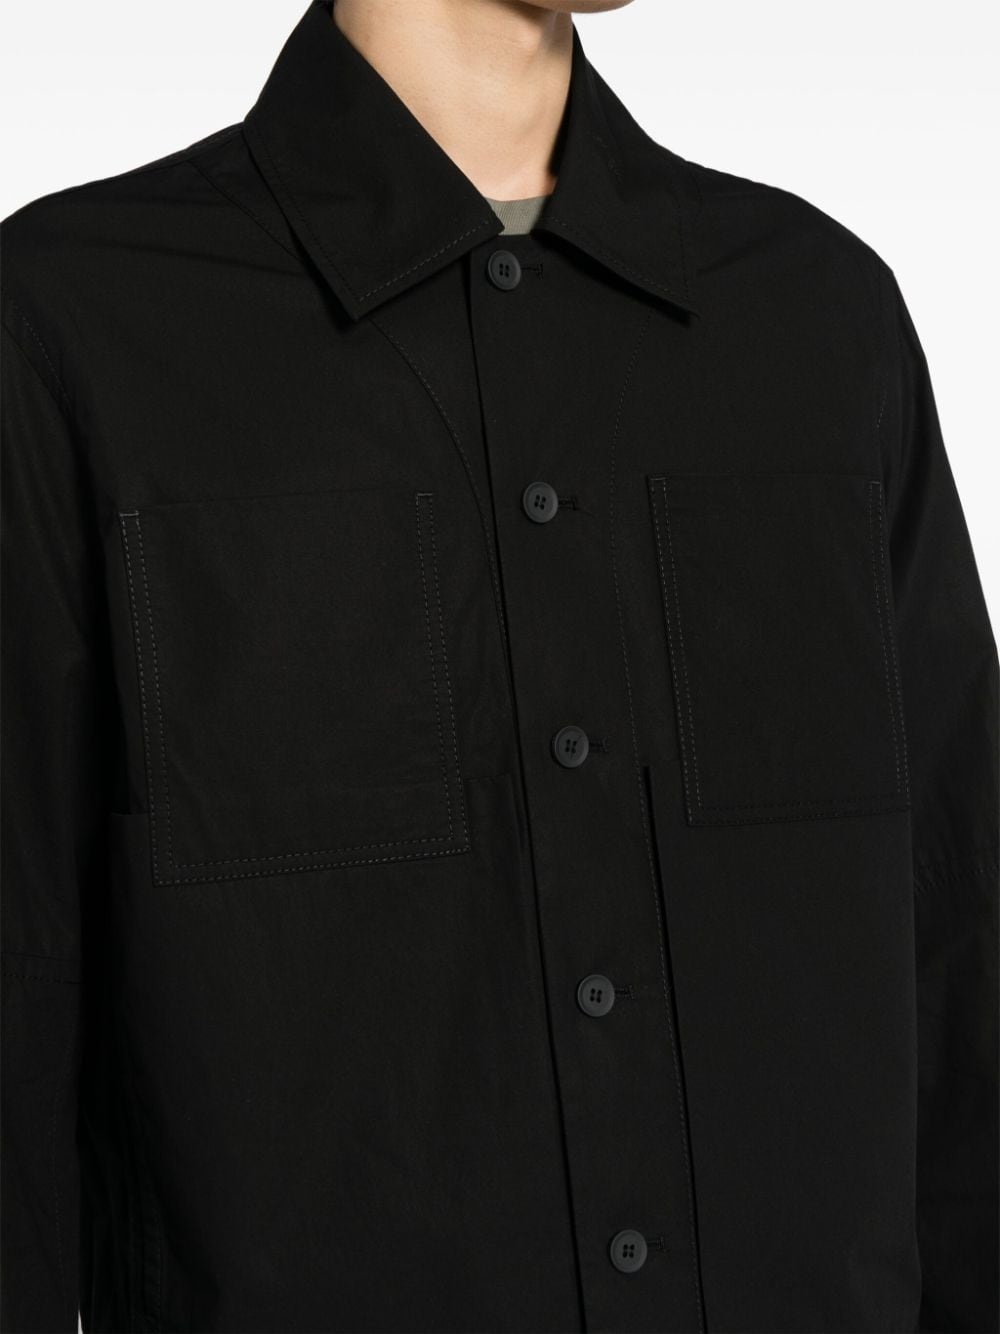 classic-collar shirt jacket - 4